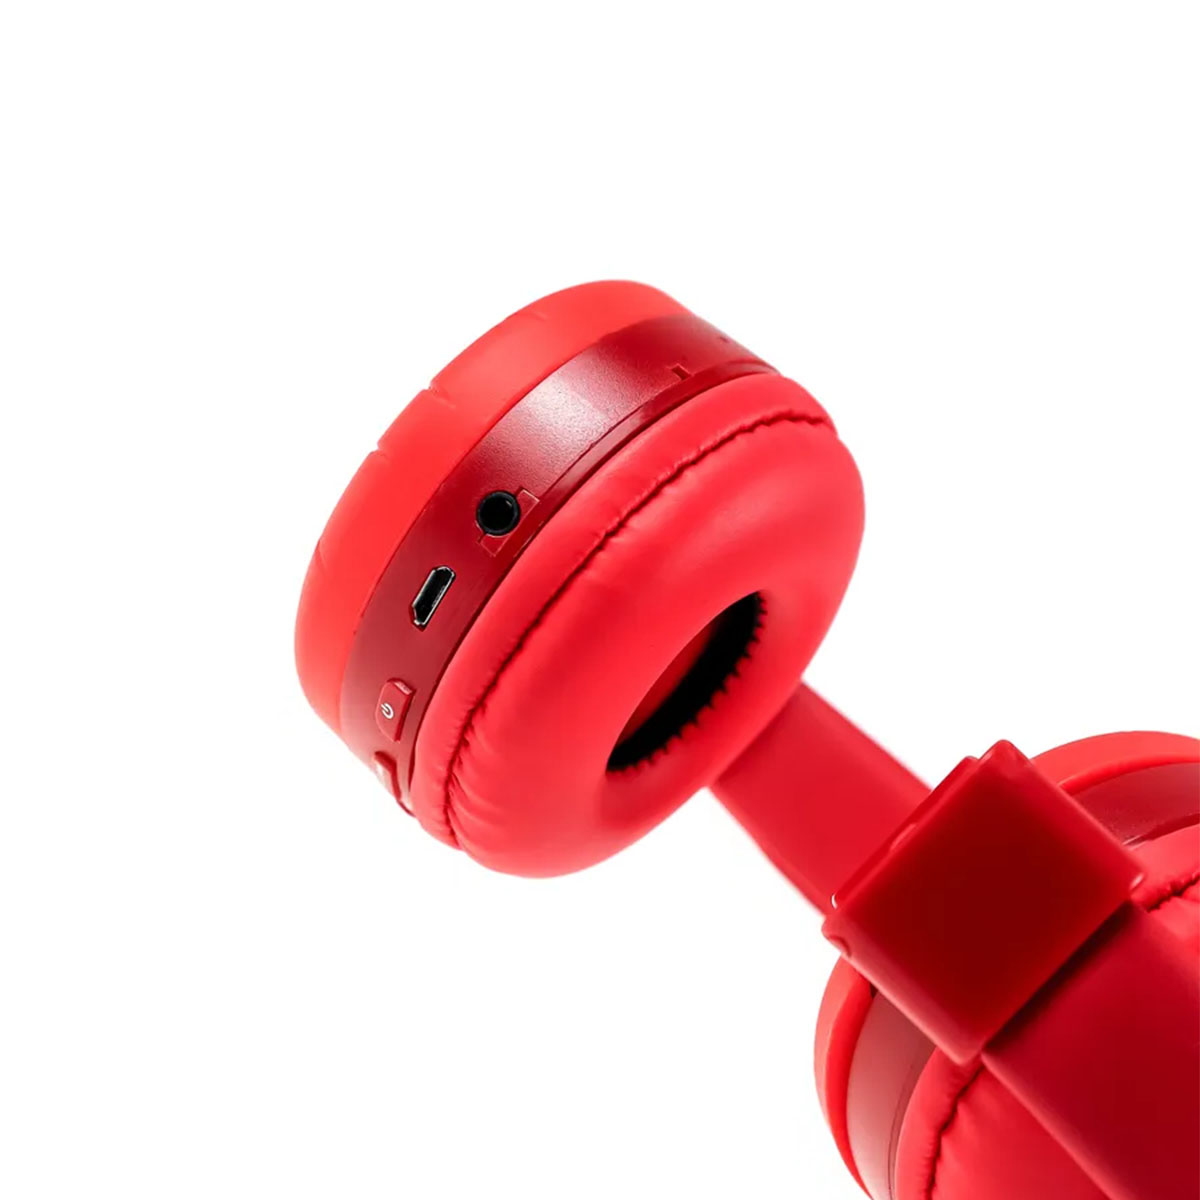 Гарнитура (наушники с микрофоном) беспроводная KR-9900, полноразмерная, рисунок Человек Паук, цвет красный